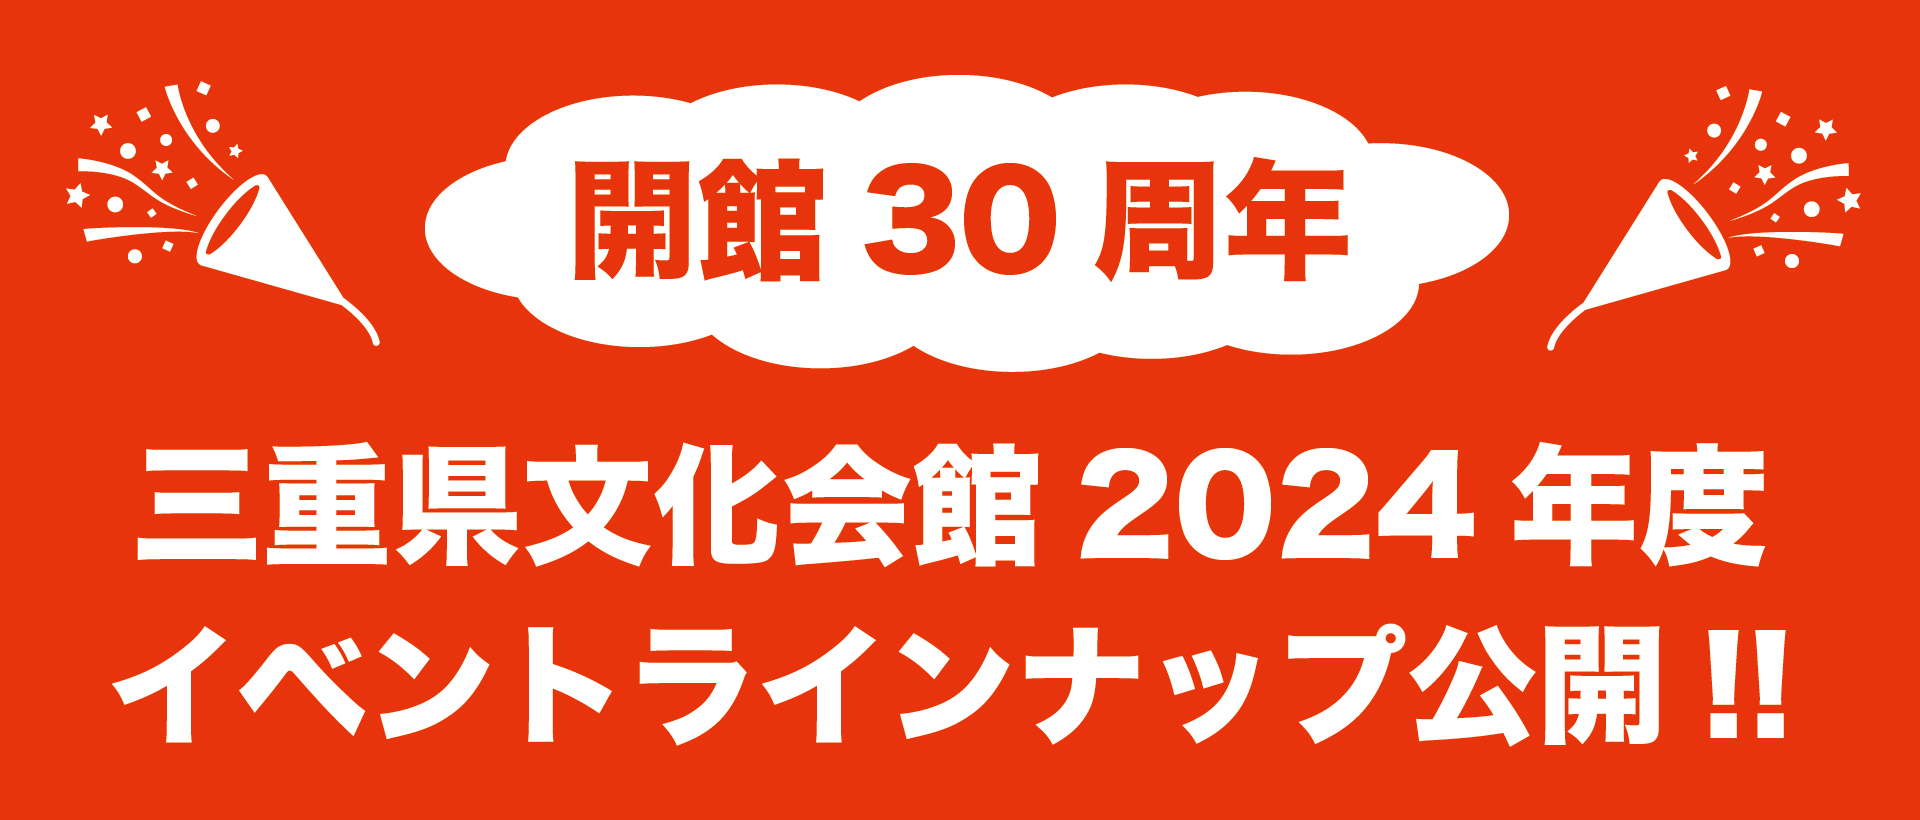 三重県文化会館2024年度イベントラインナップ公開